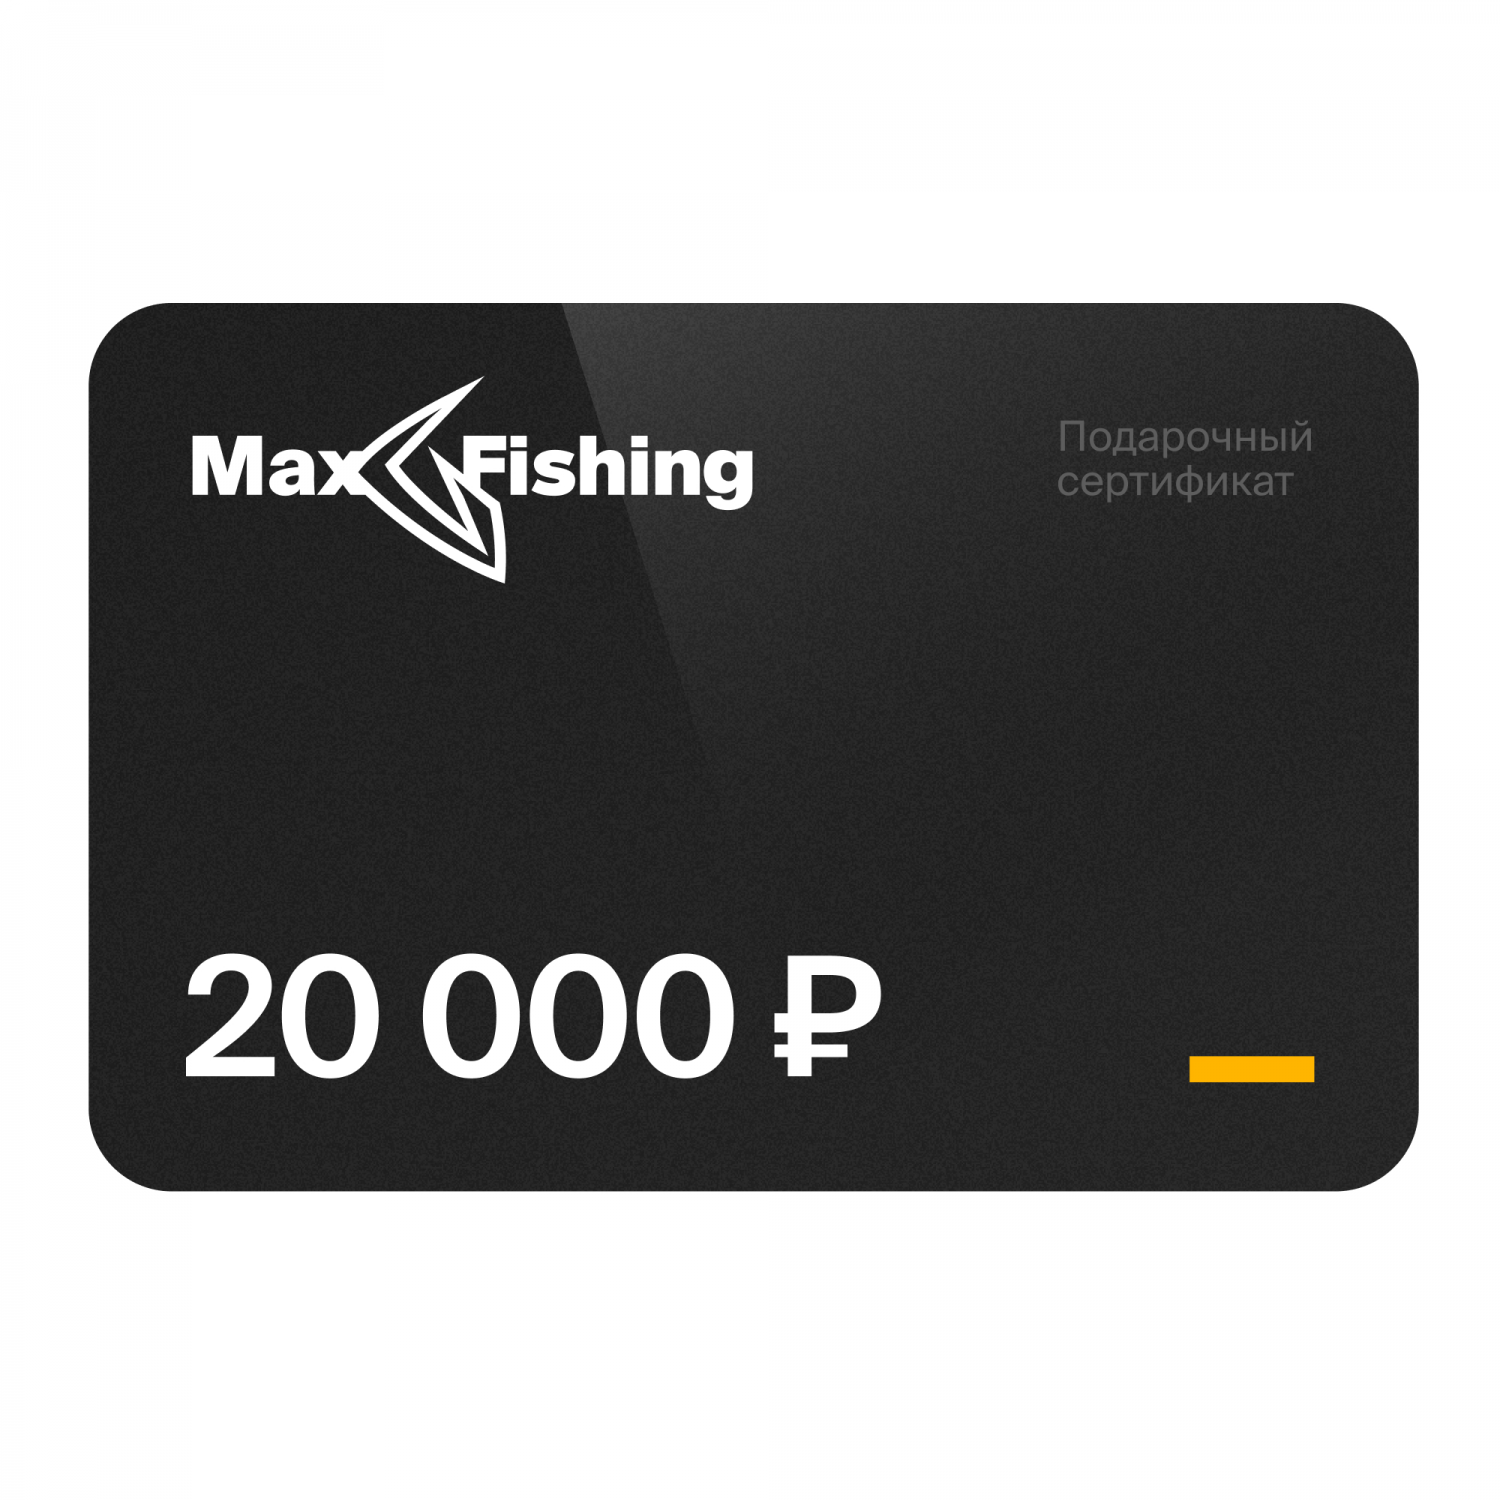 Подарочный сертификат MaxFishing 20 000 ₽ подарочный сертификат maxfishing 25